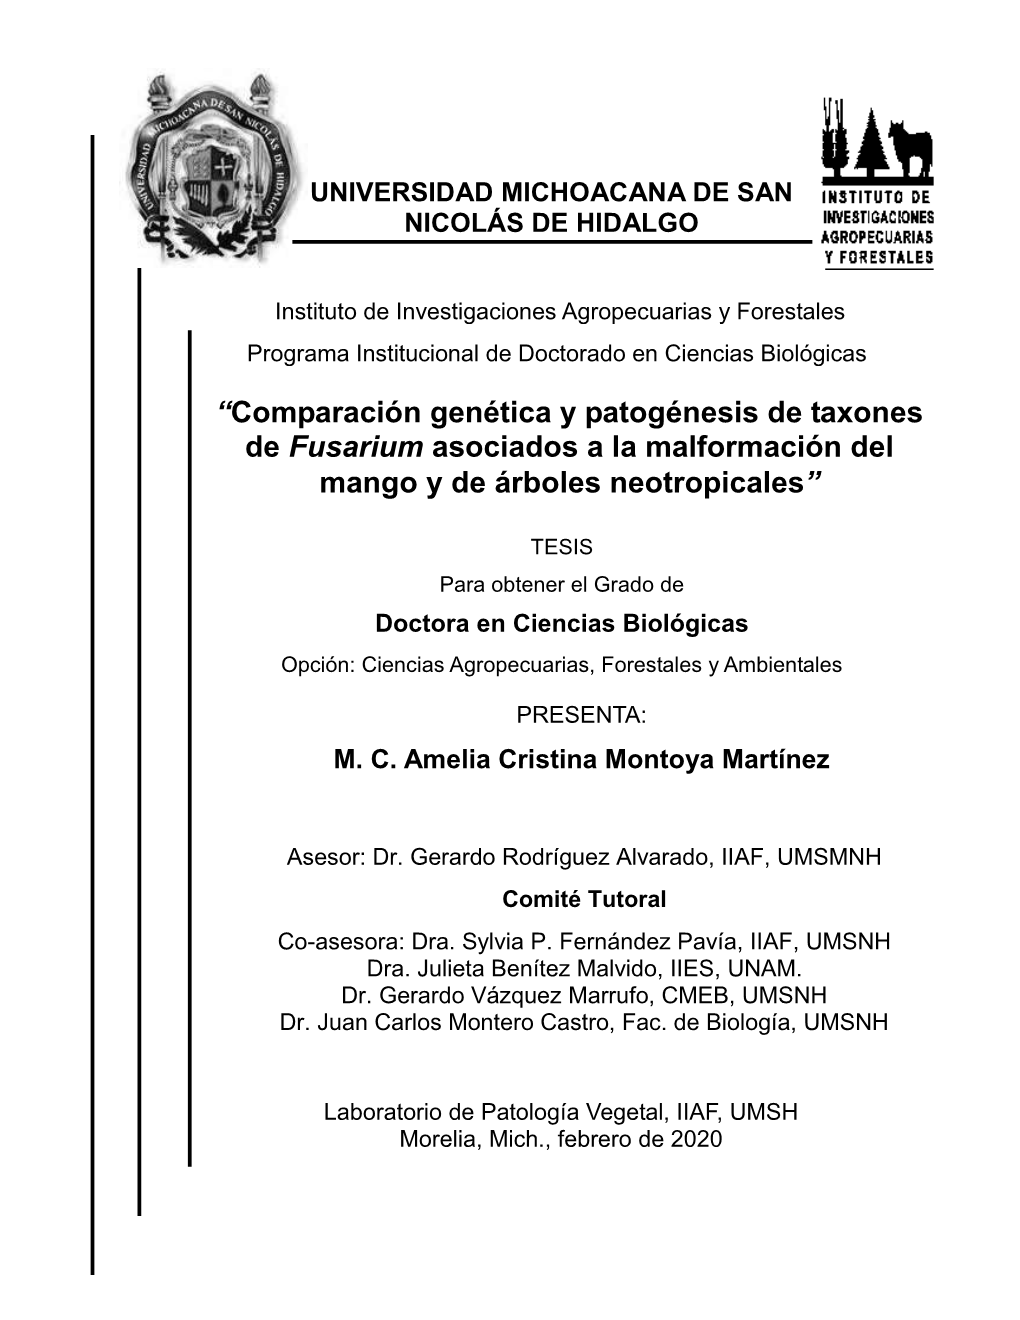 Comparación Genética Y Patogénesis De Taxones De Fusarium Asociados a La Malformación Del Mango Y De Árboles Neotropicales”